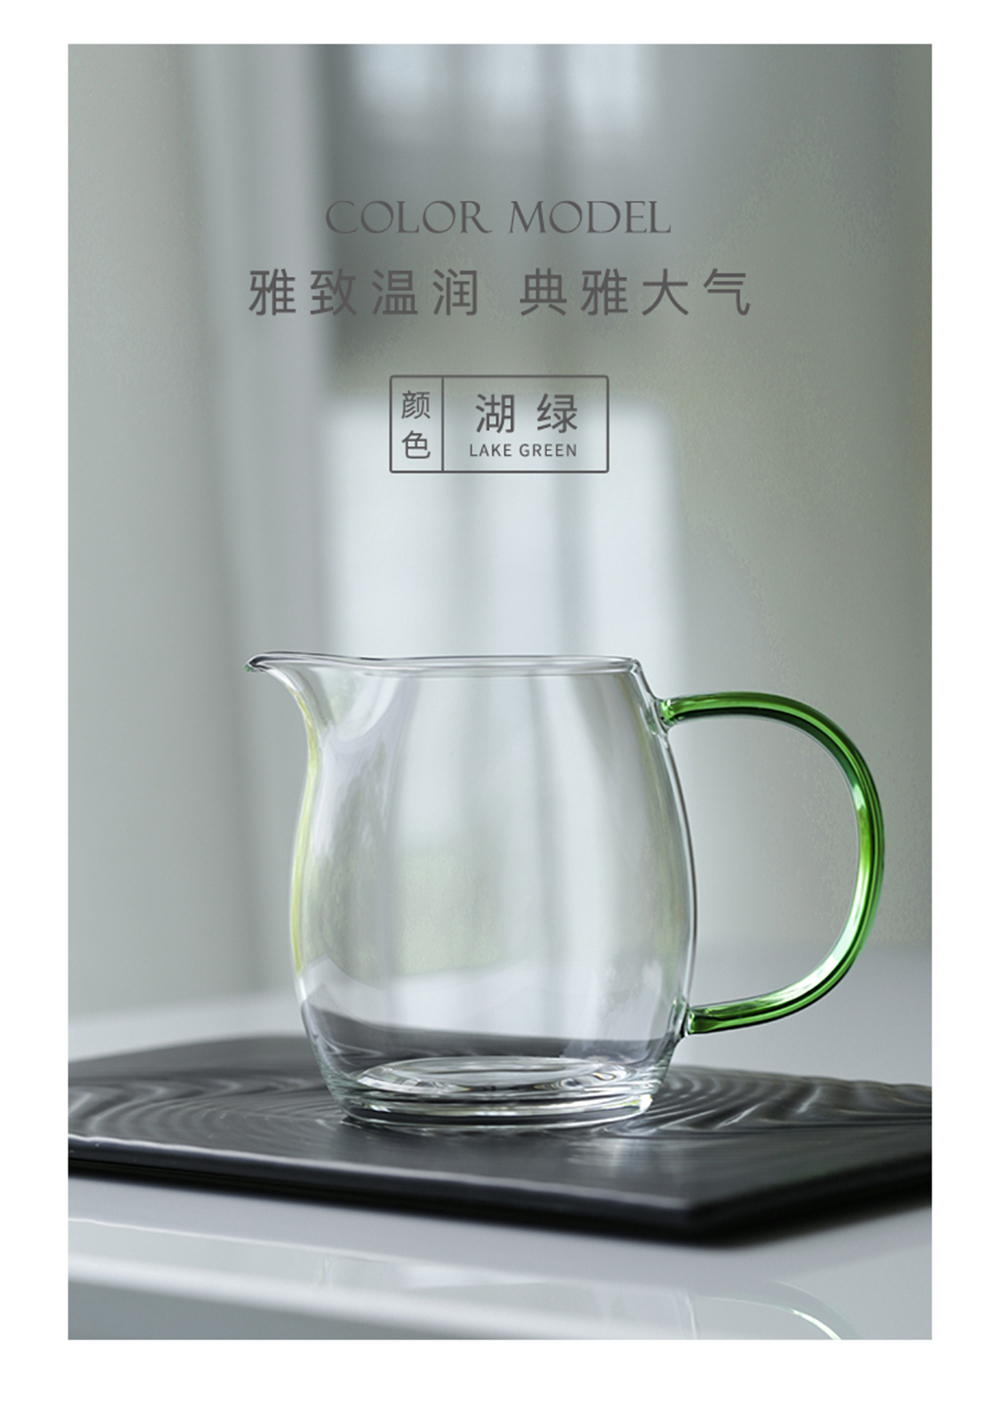 晶彩·澄然茶海晶彩·澄然茶海加logo_09